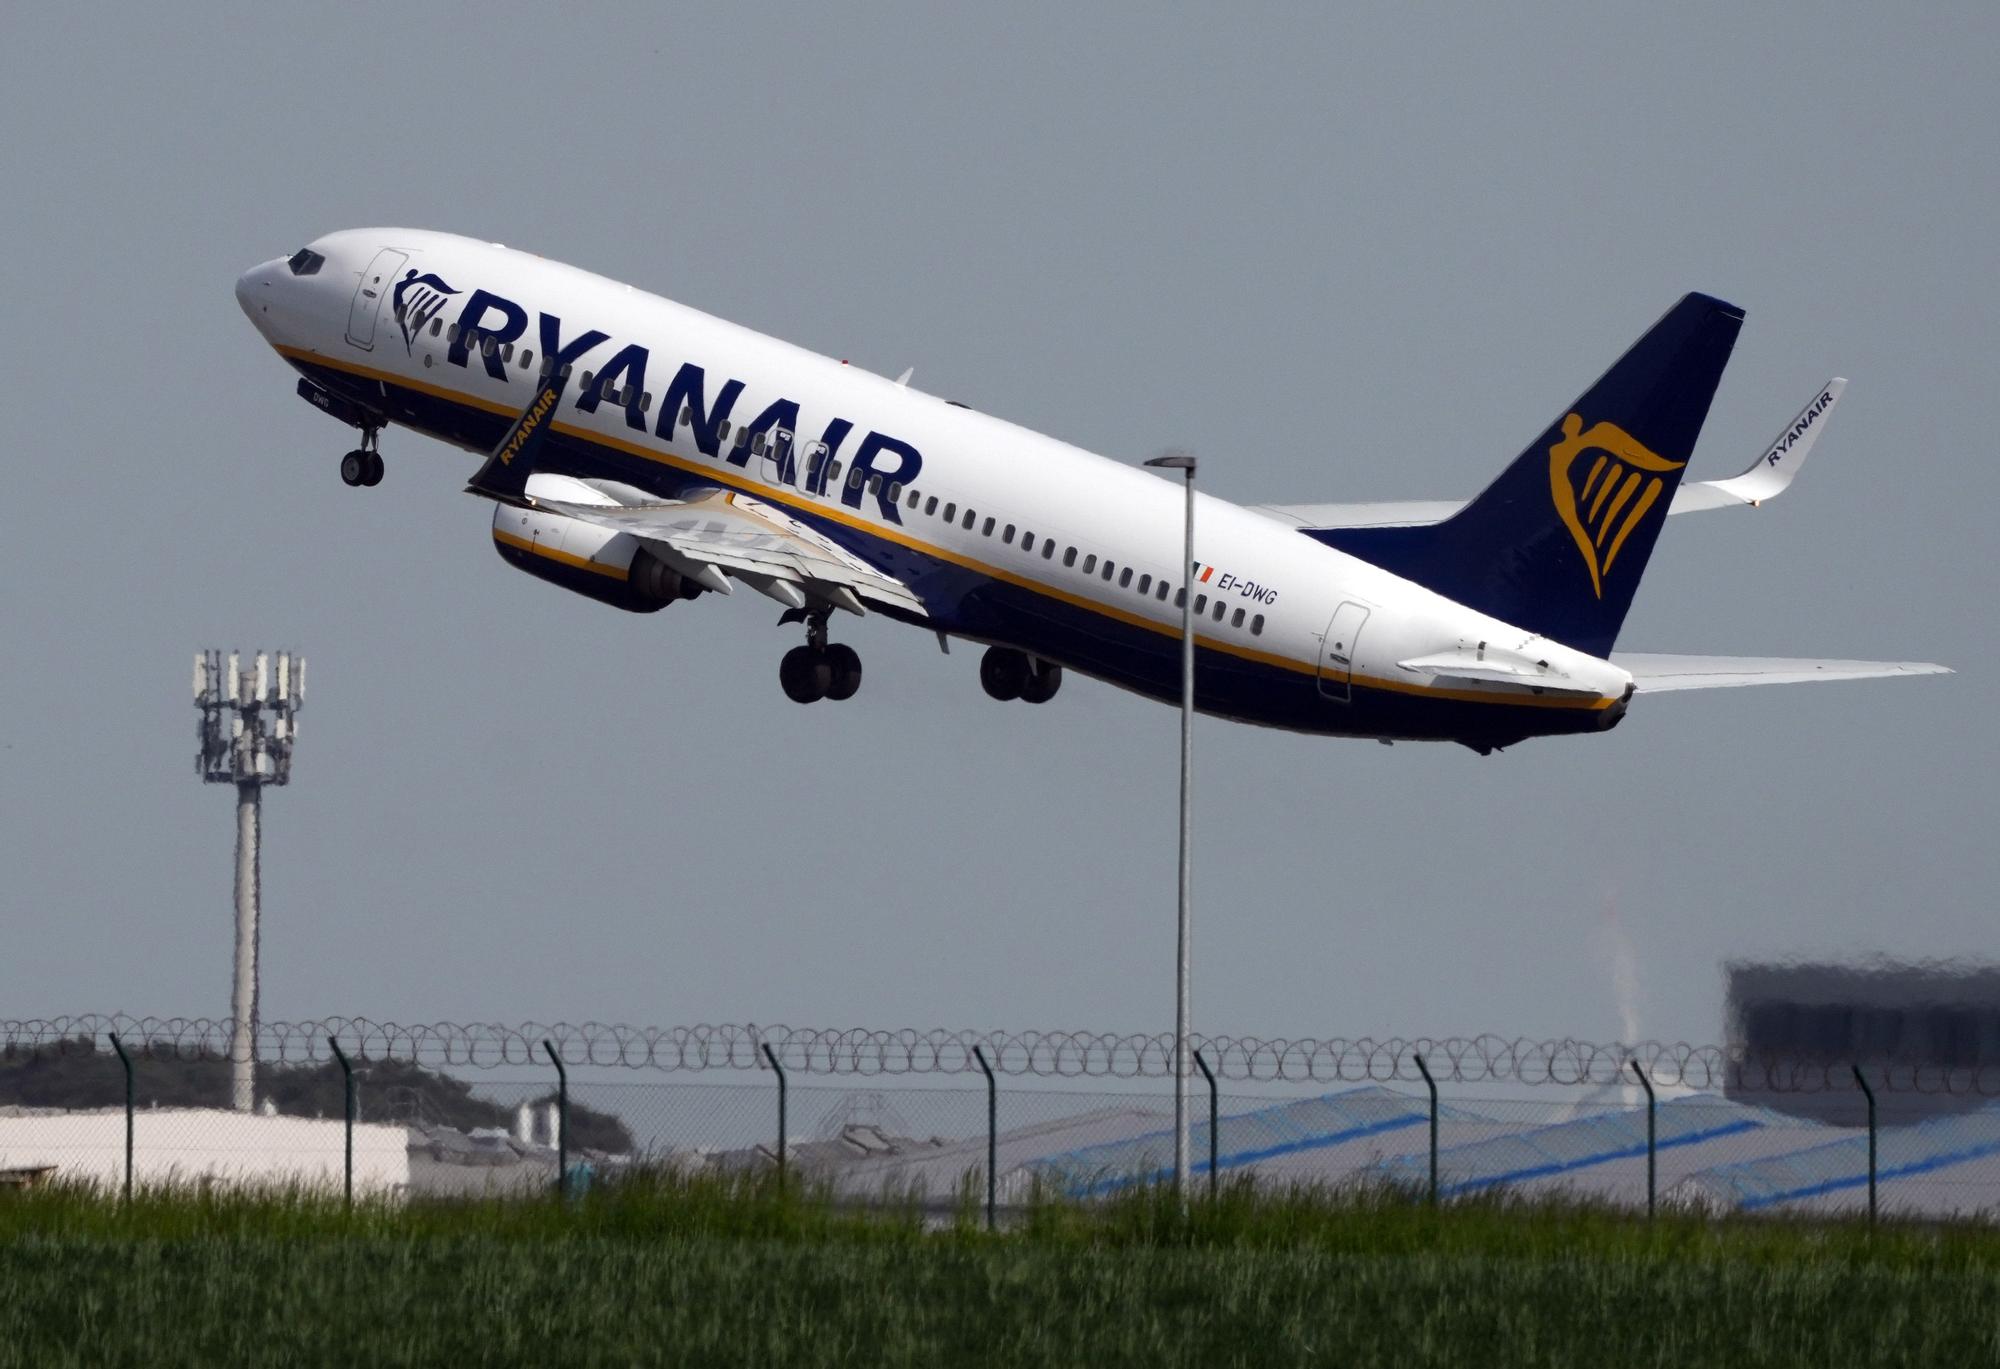 Equipaje de mano de Ryanair. Normas y precios 2021.